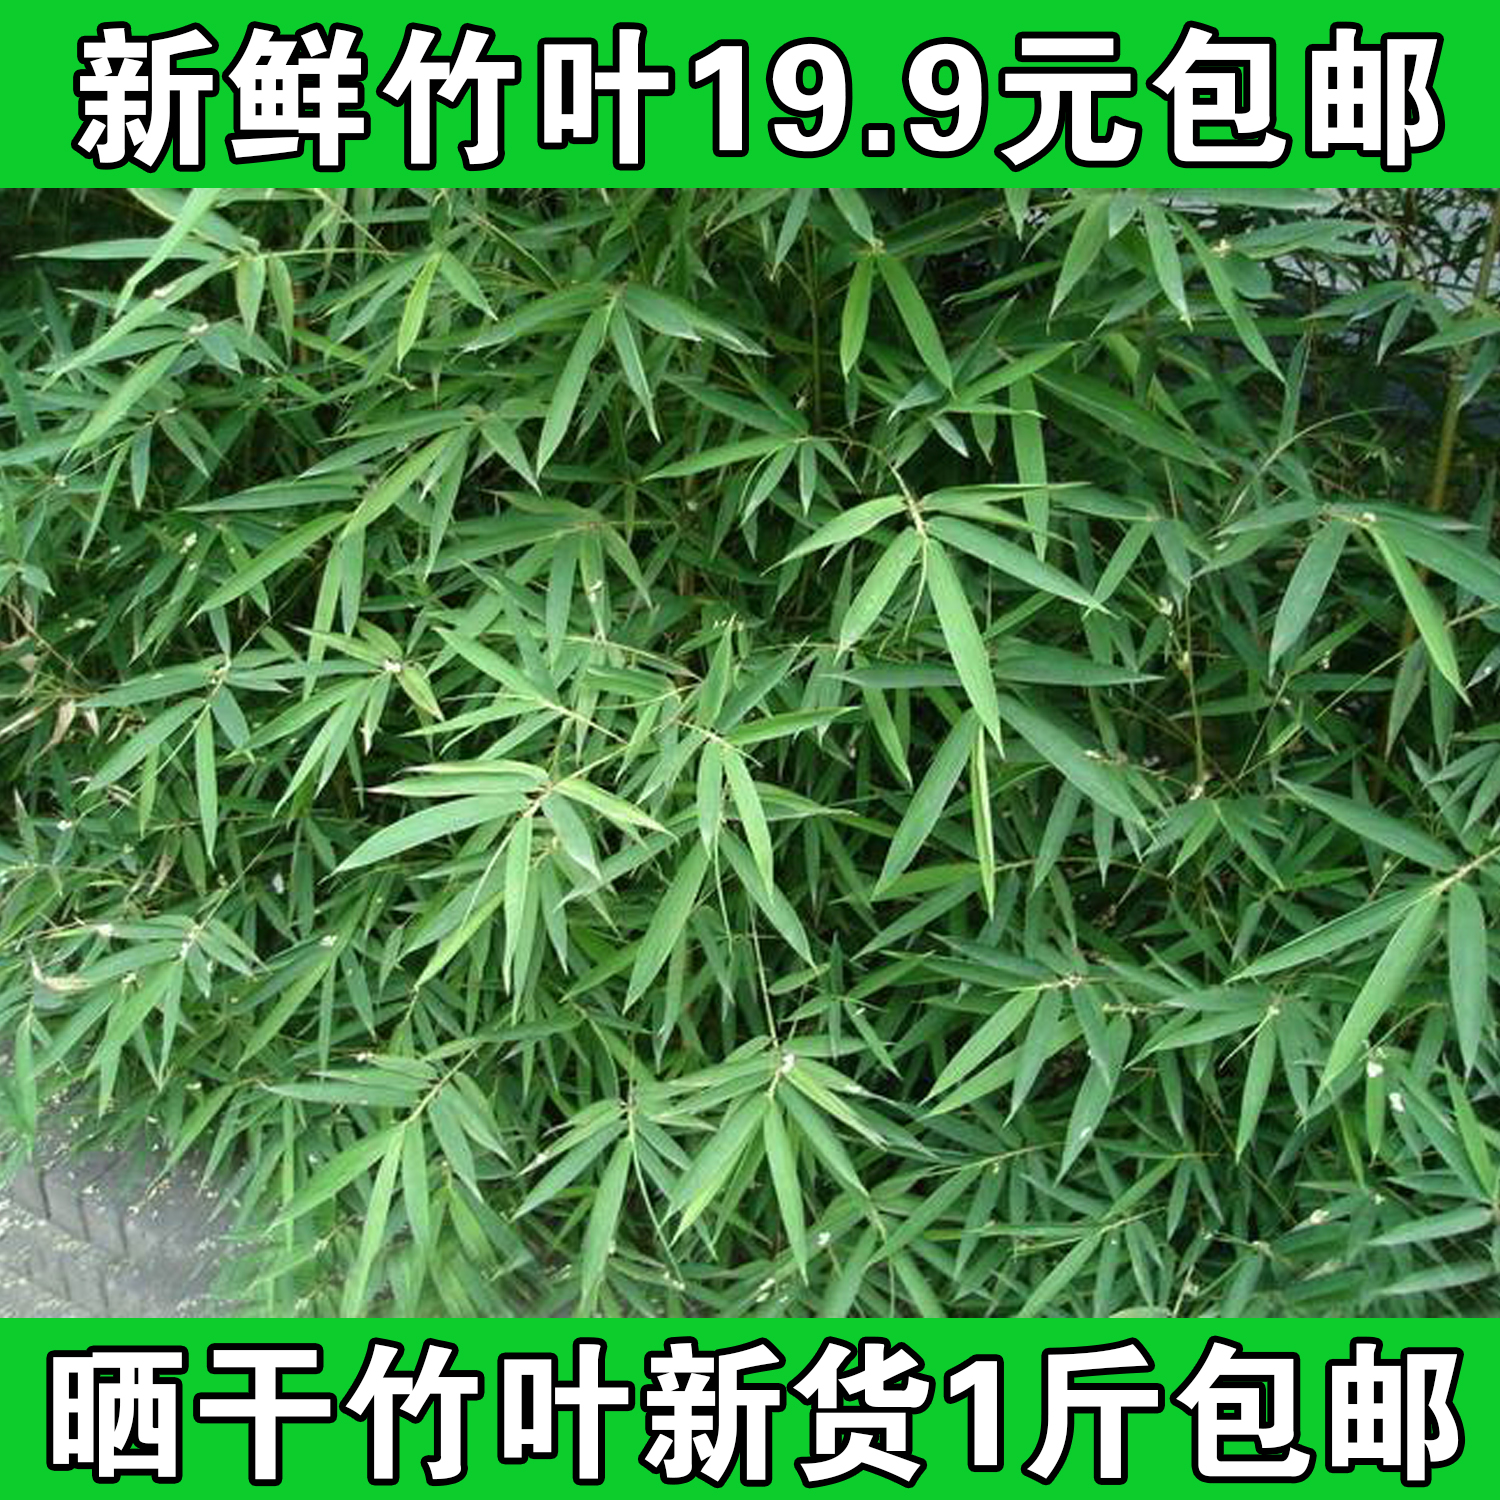 淡竹叶 Dan Zhu Ye / Herba lophatheri /Lophatherum stem & leaves / Common ...